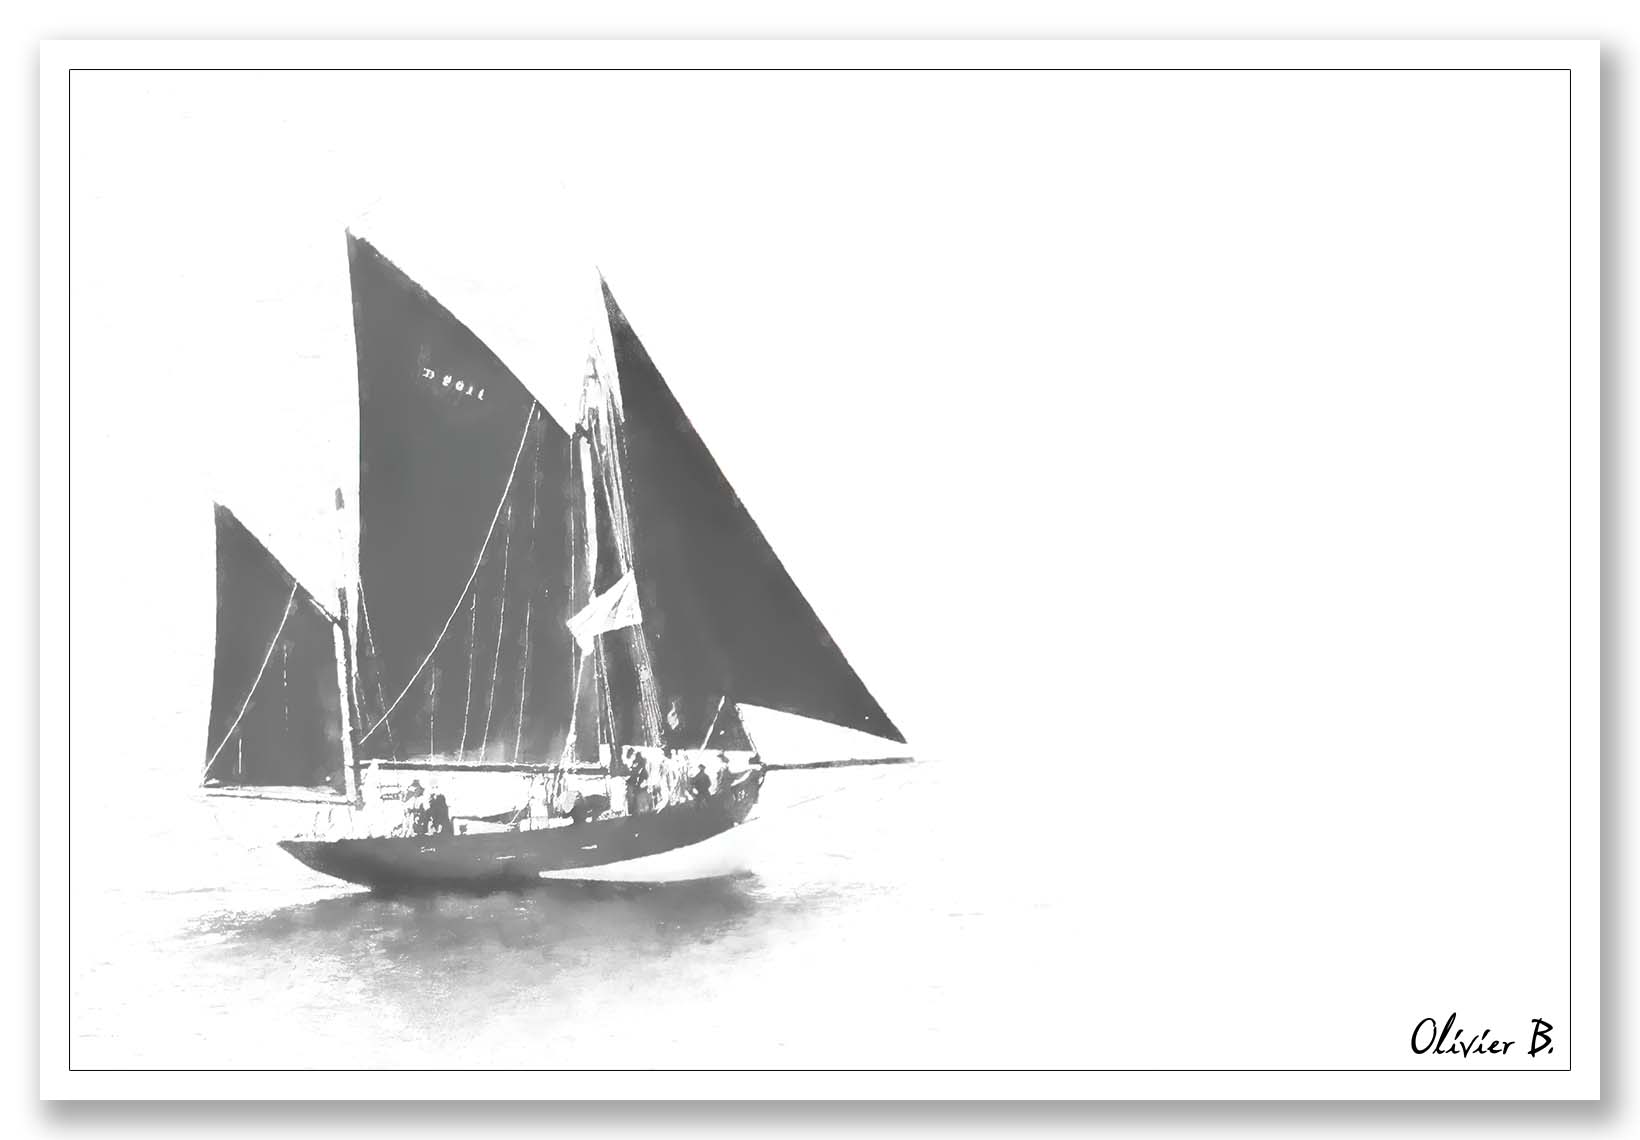 Un vieux voilier de pêcheur file vers l'inconnu, remontant le temps avec toute voile au vent